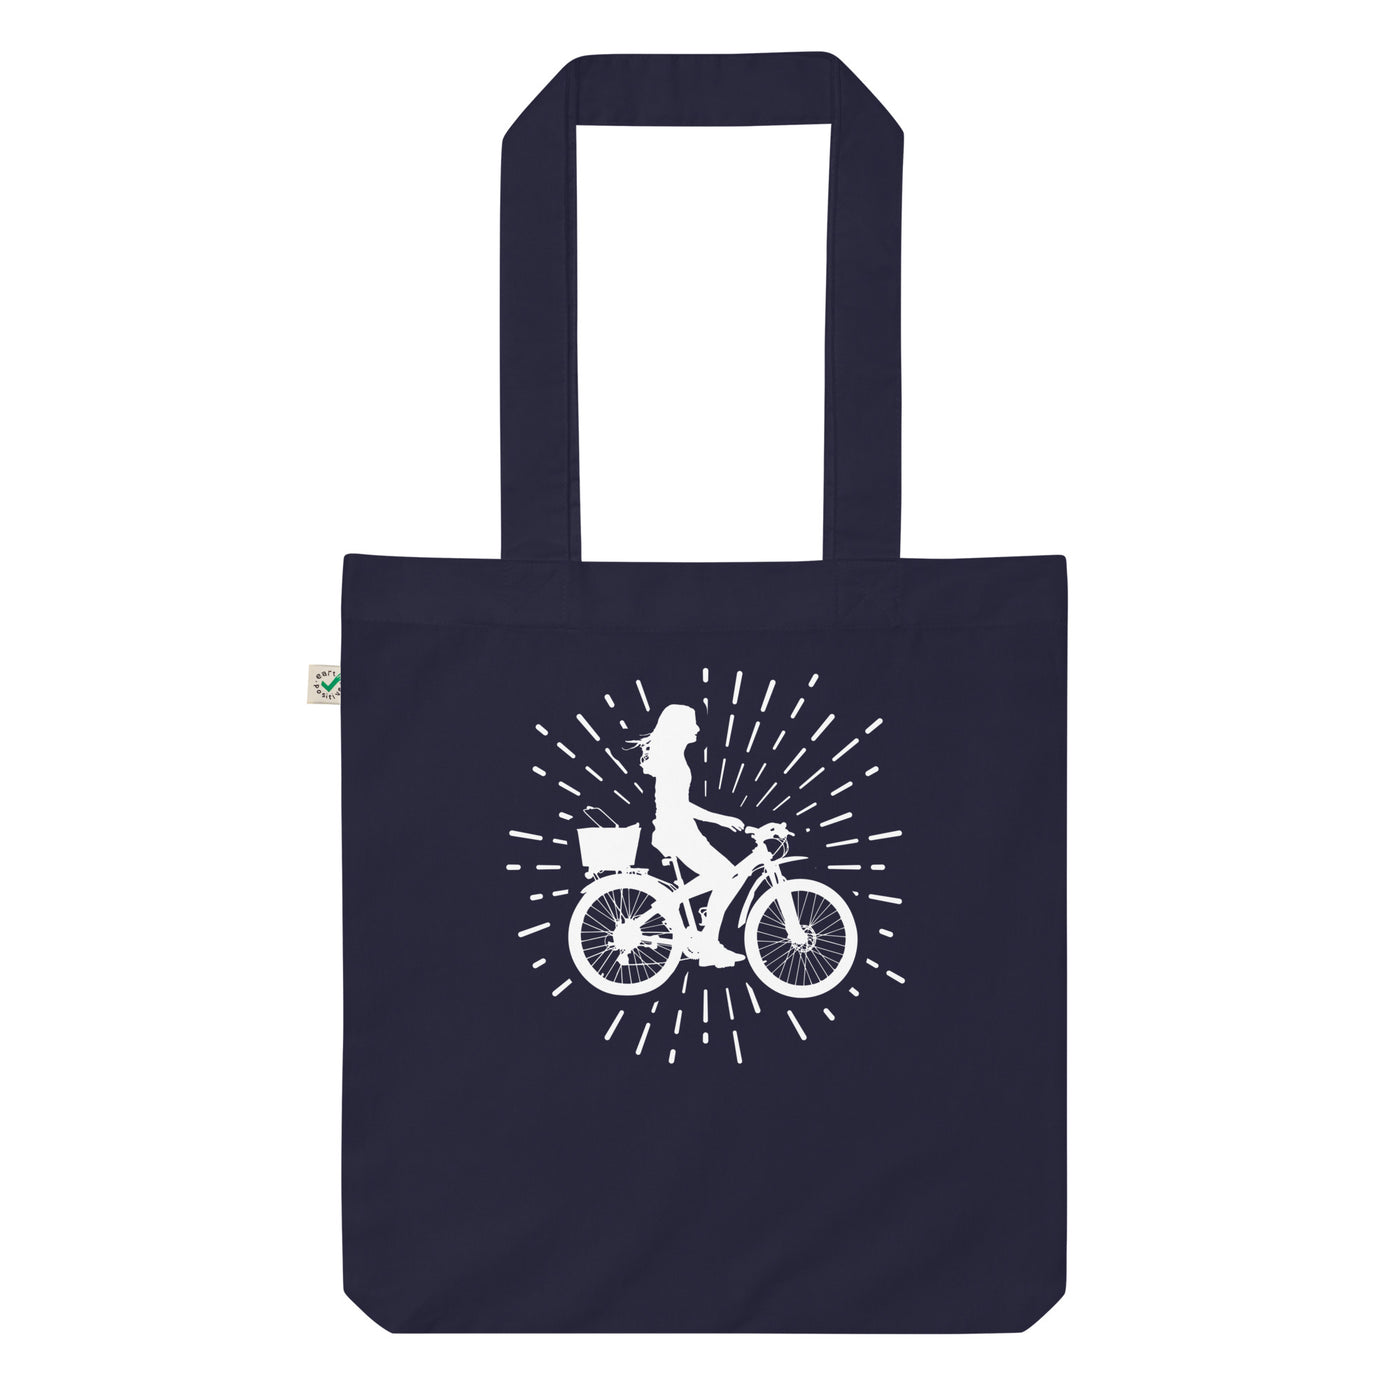 Feuerwerk Und Radfahren 2 - Organic Einkaufstasche fahrrad